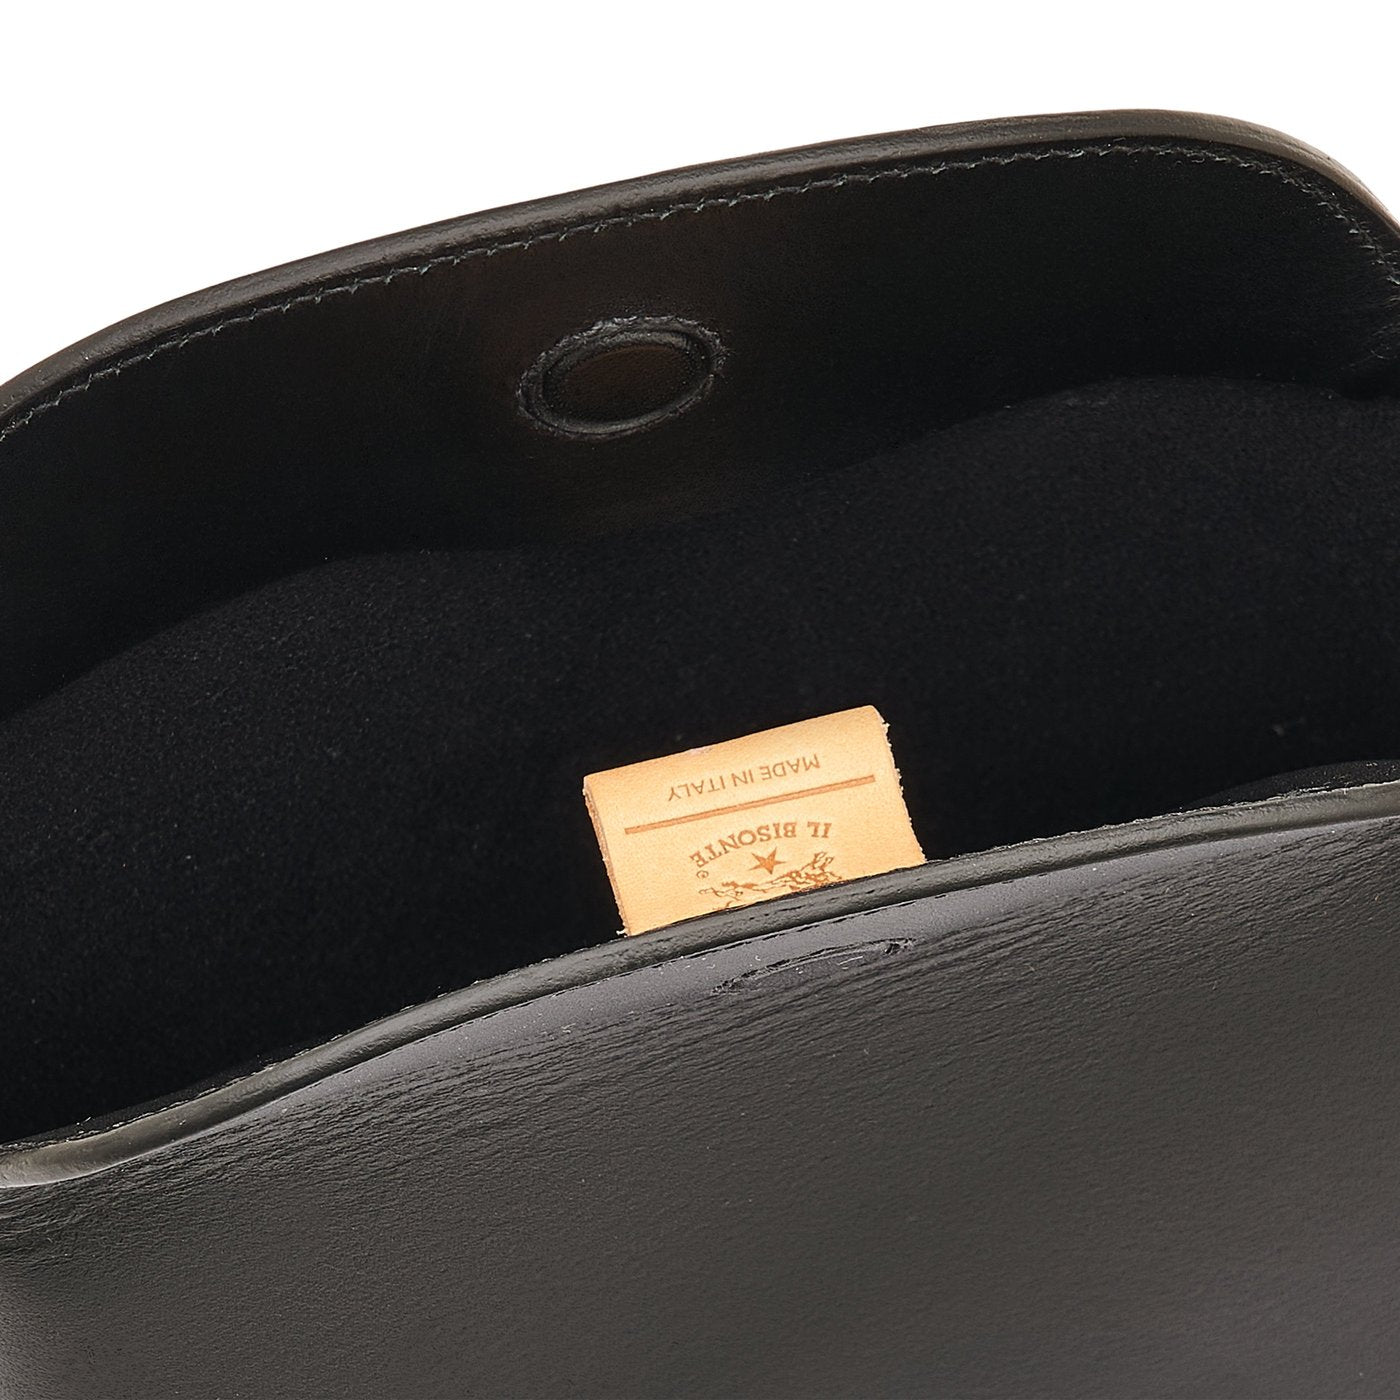 Maggio | Women's crossbody bag in leather color black